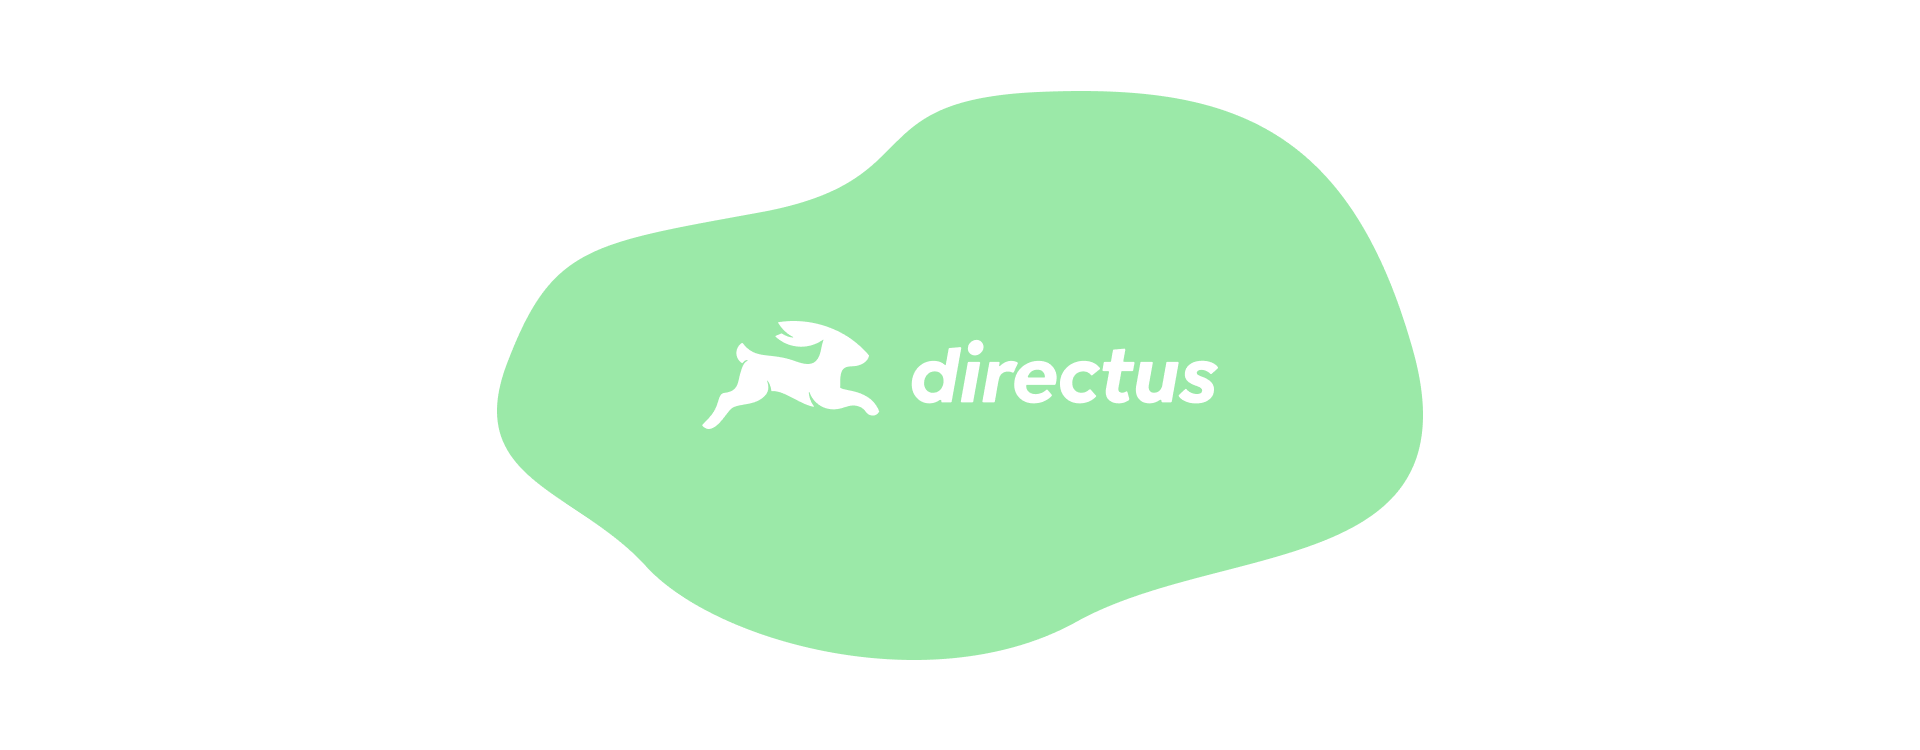 directus-green.png